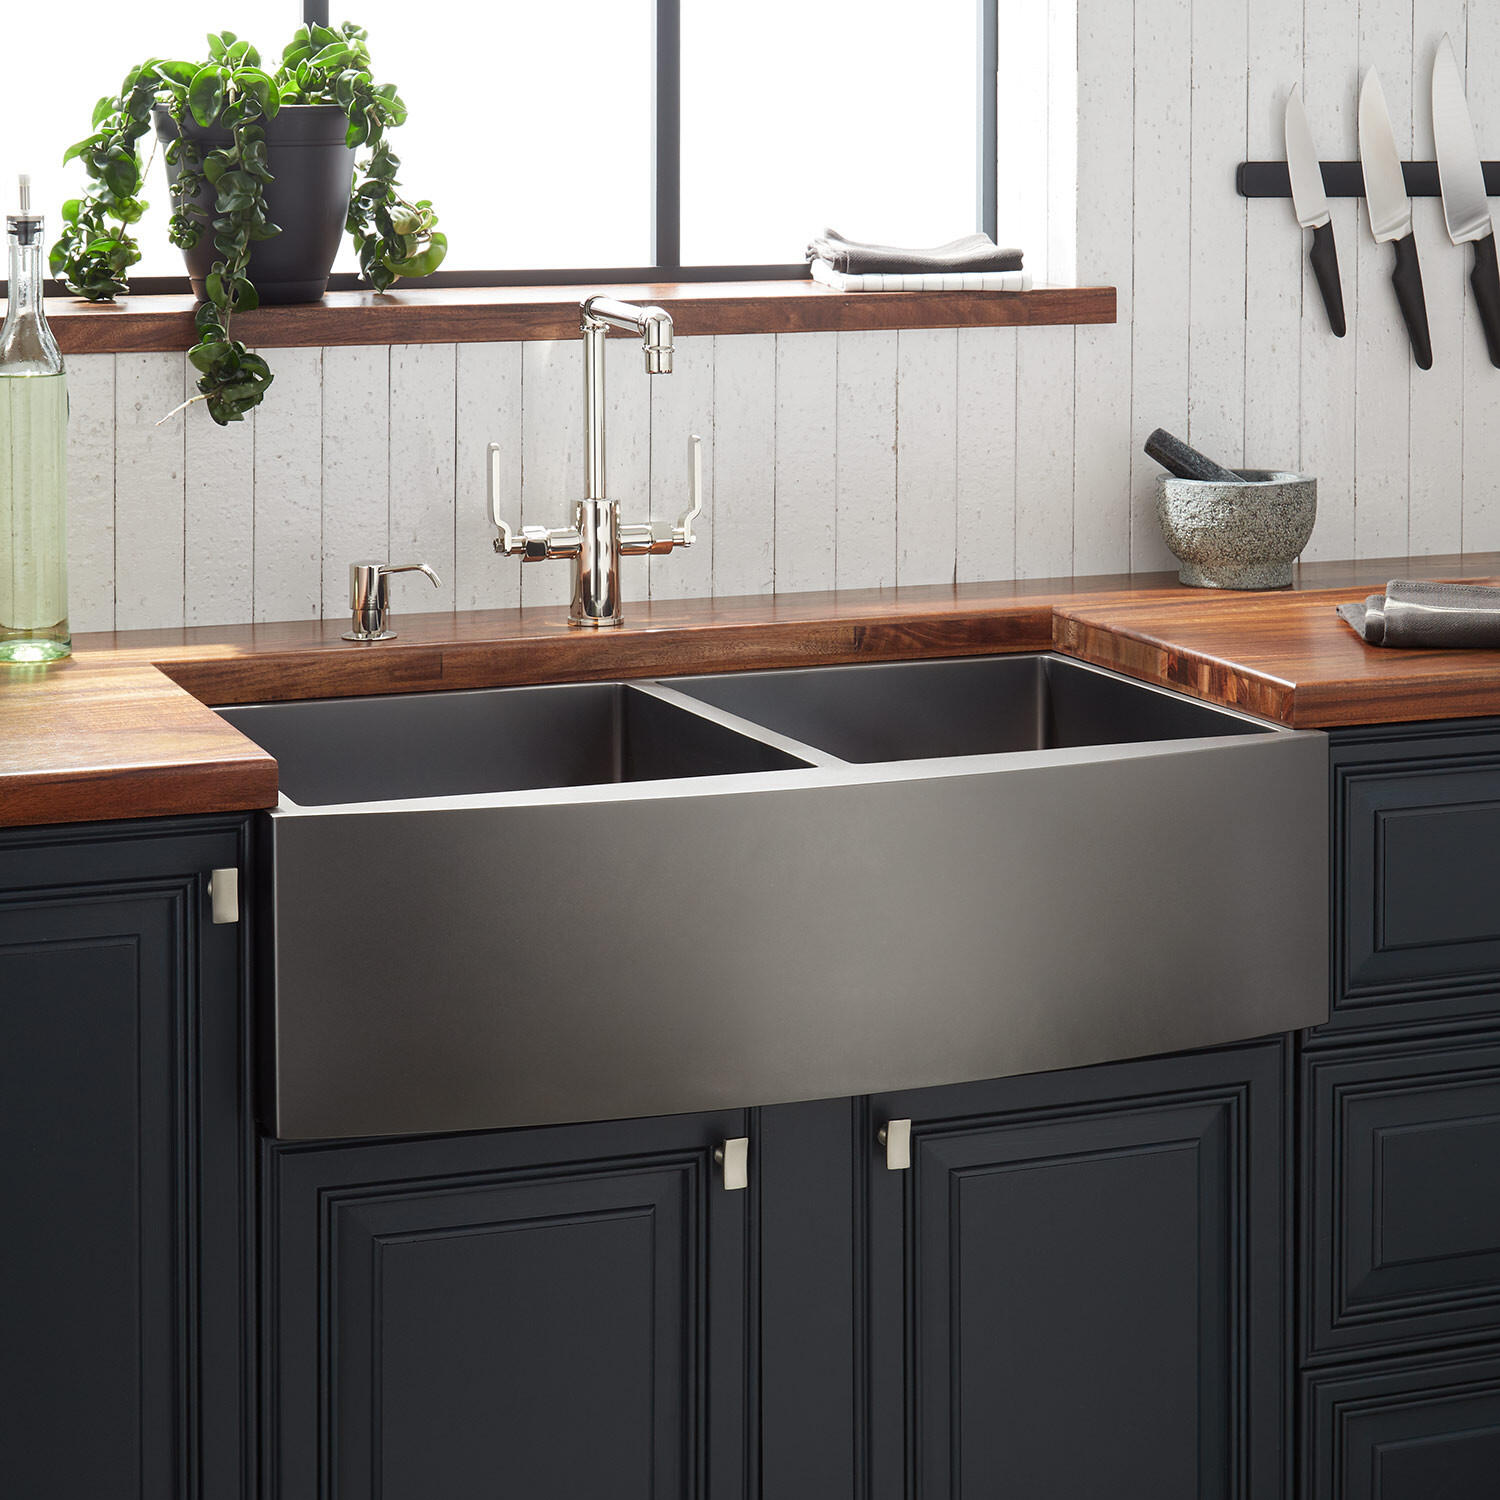 Bồn rửa bát là một trong những thiết bị quan trọng trong phòng bếp, giúp bạn trong khâu sơ chế thực phẩm cũng như vệ sinh dọn rửa.